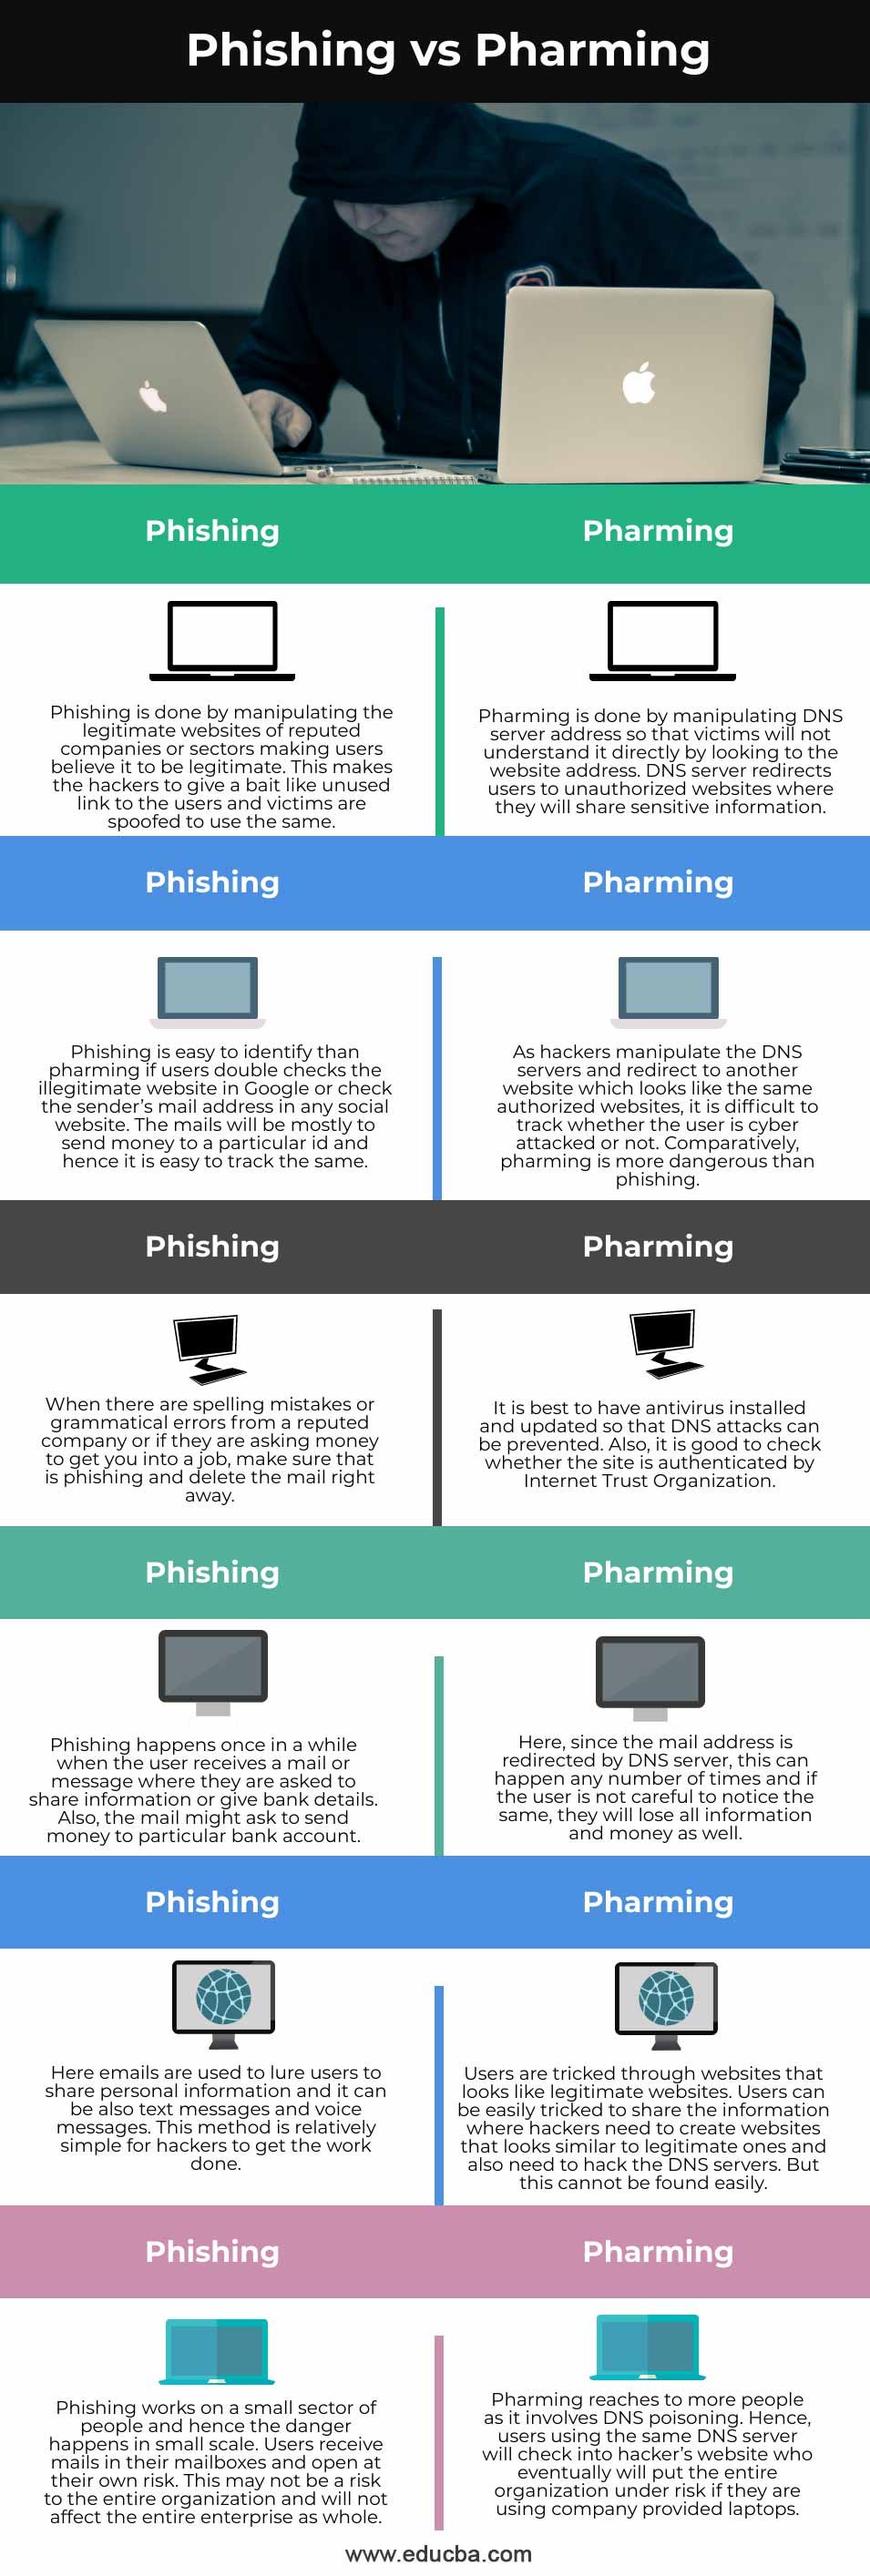 Phishing-vs-Pharming-info